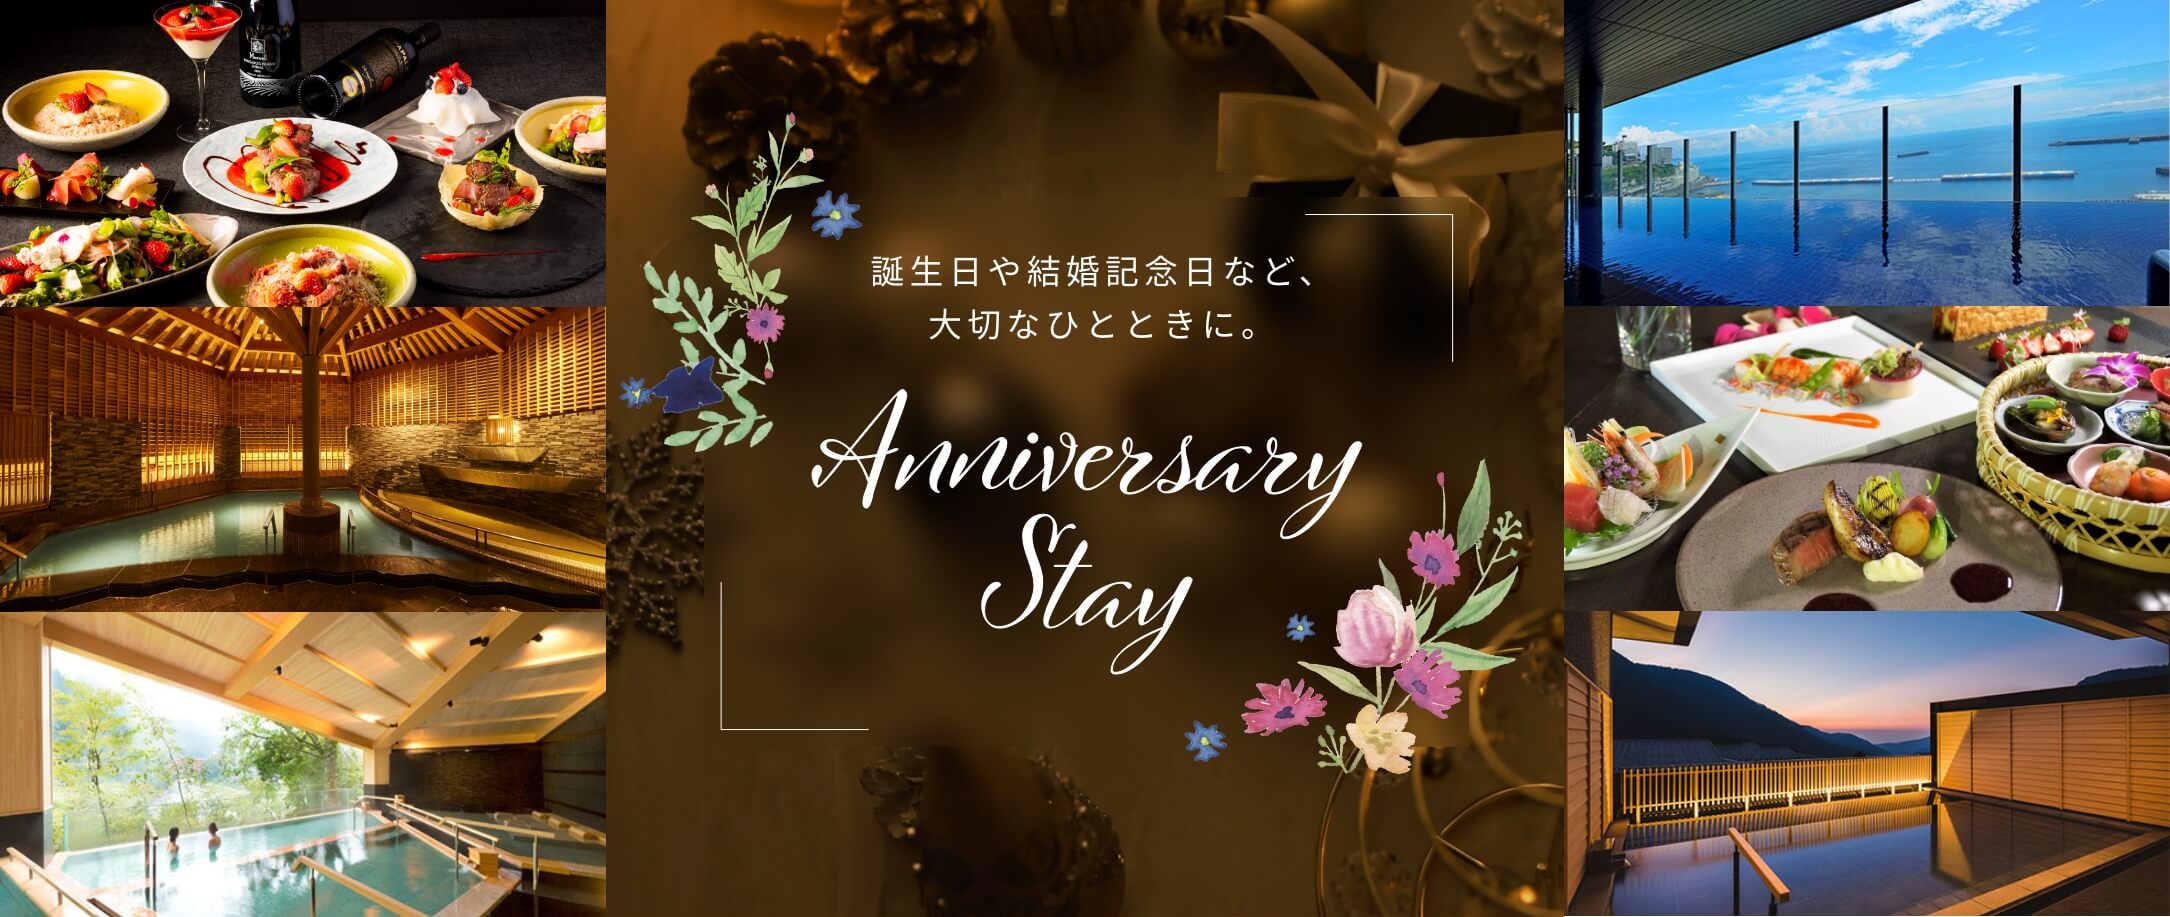 Anniversary Stay